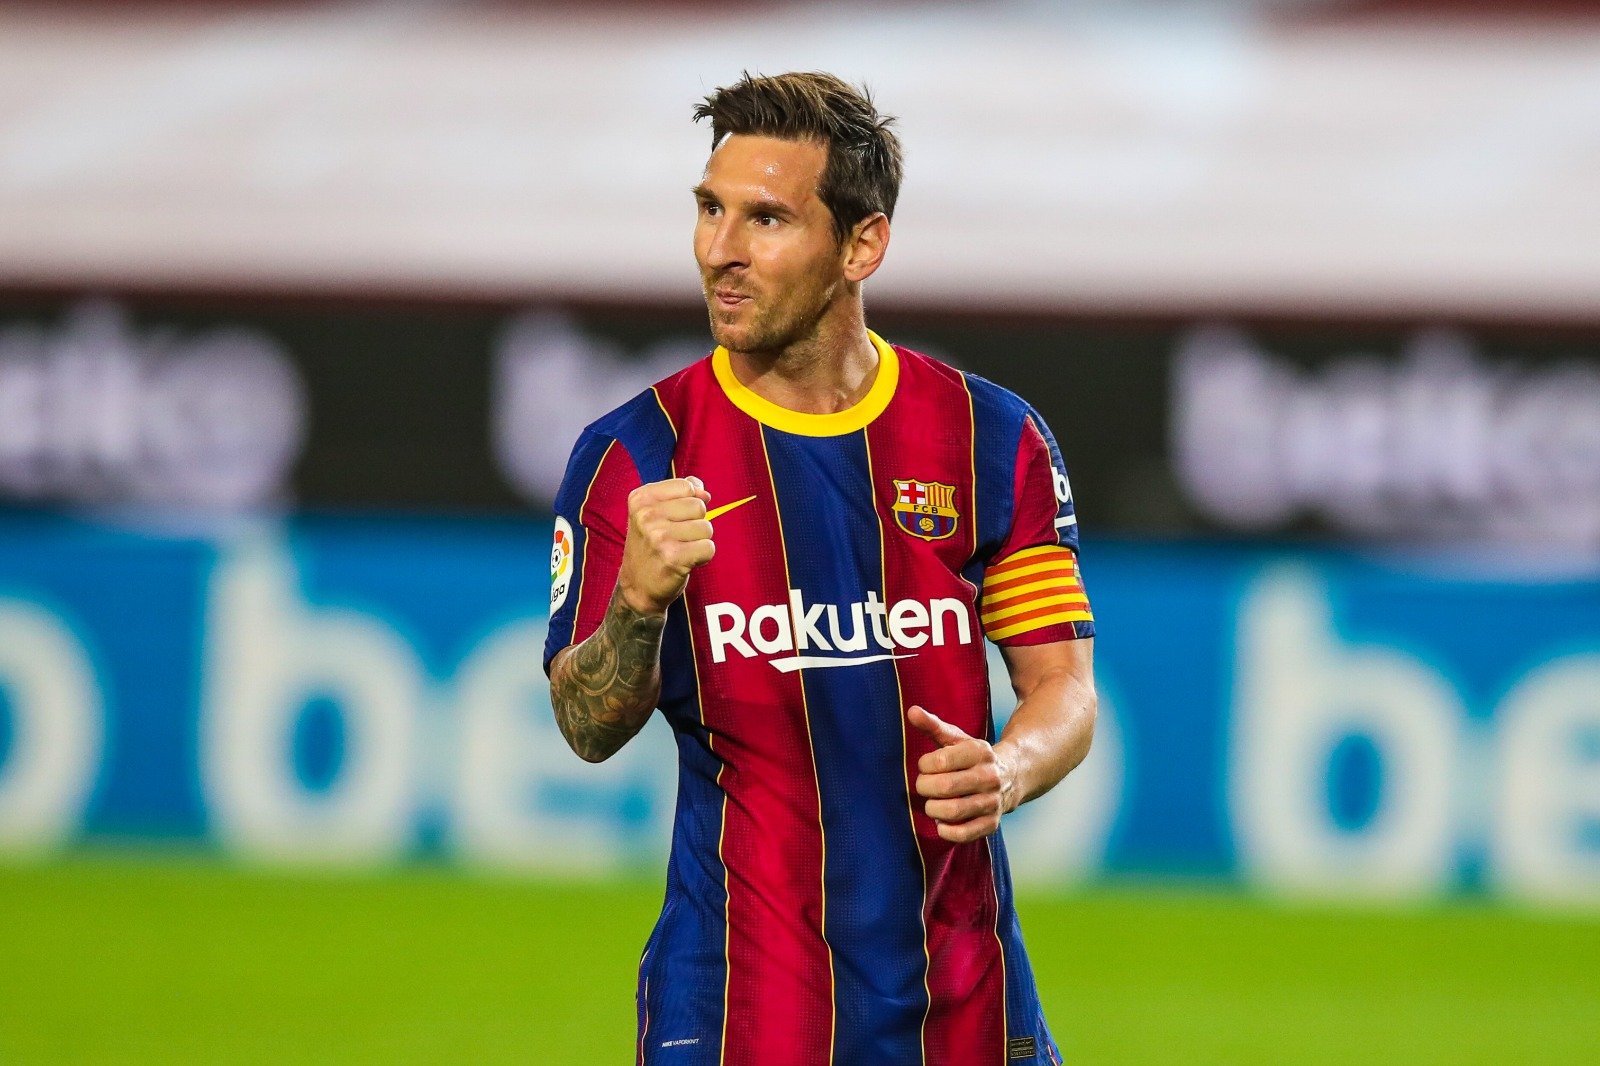  Apelul FC Barcelona la suspendarea lui Messi a fost respins. Starul va sta pe margine încă o etapă